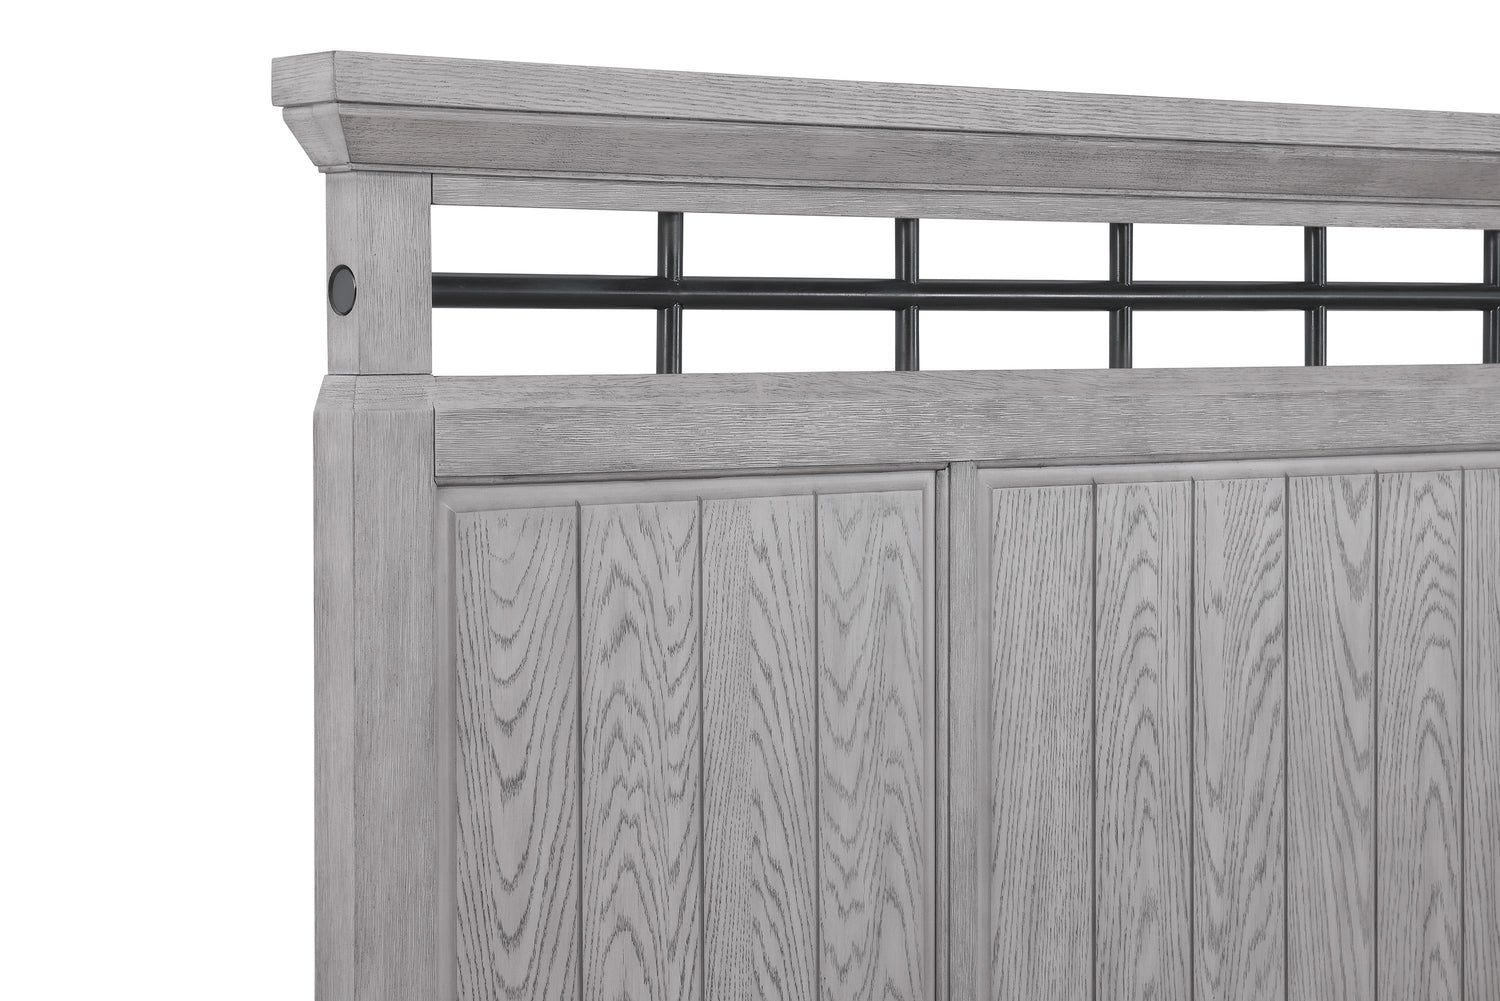 Beckett Rustic Gray Footboard Bench Panel Bedroom Set - SET | B1900-Q-HB | B1900-Q-FB | B1900-KQ-RAIL | B1900-2 | B1900-4